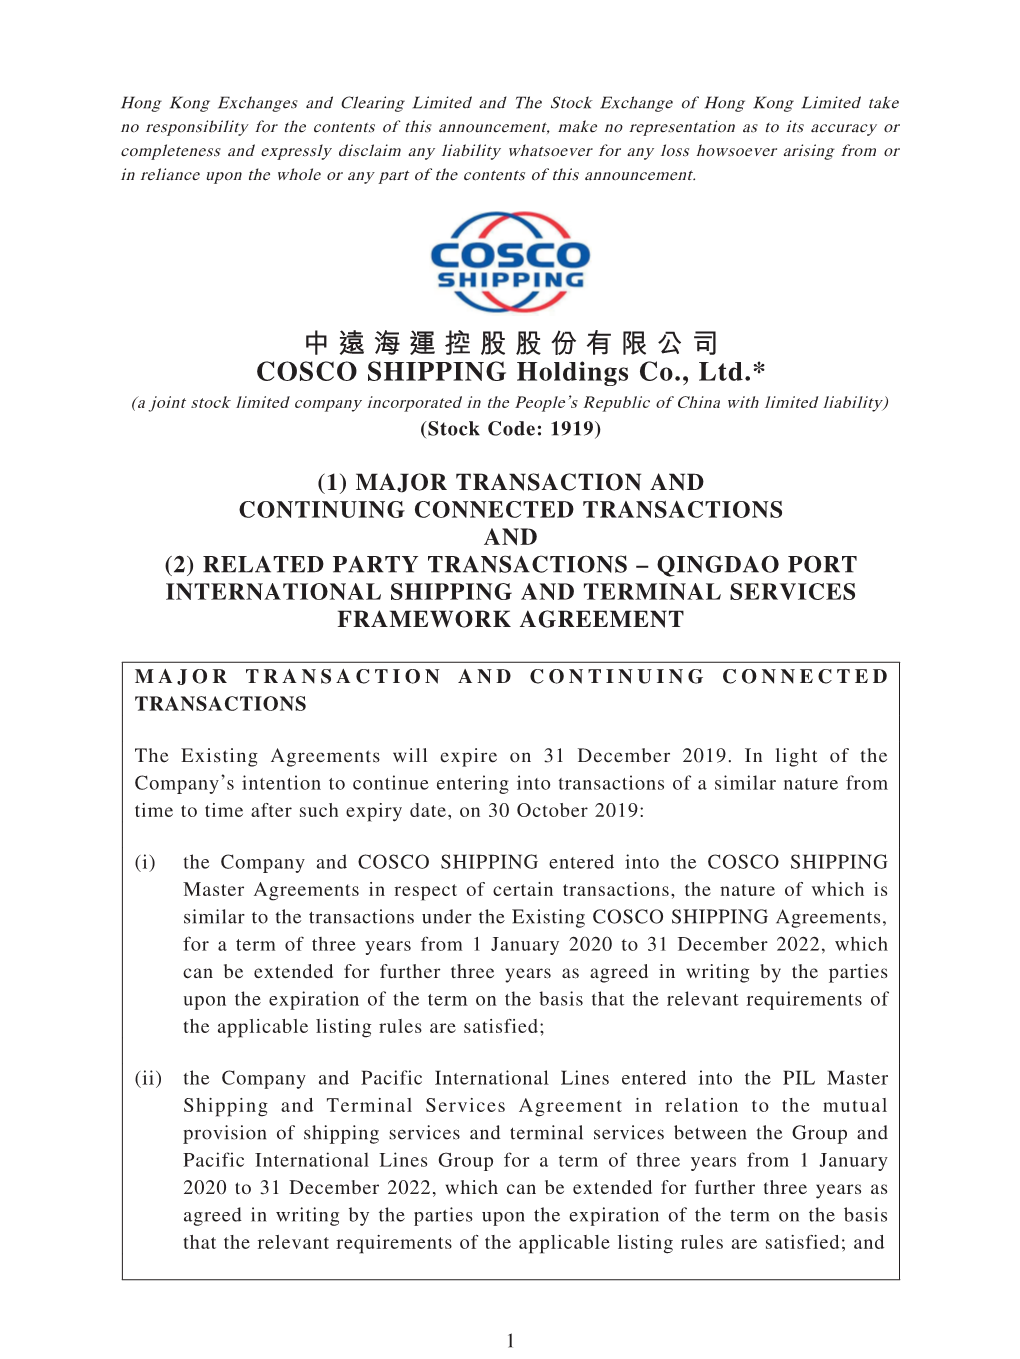 中遠海運控股股份有限公司 COSCO SHIPPING Holdings Co., Ltd.*